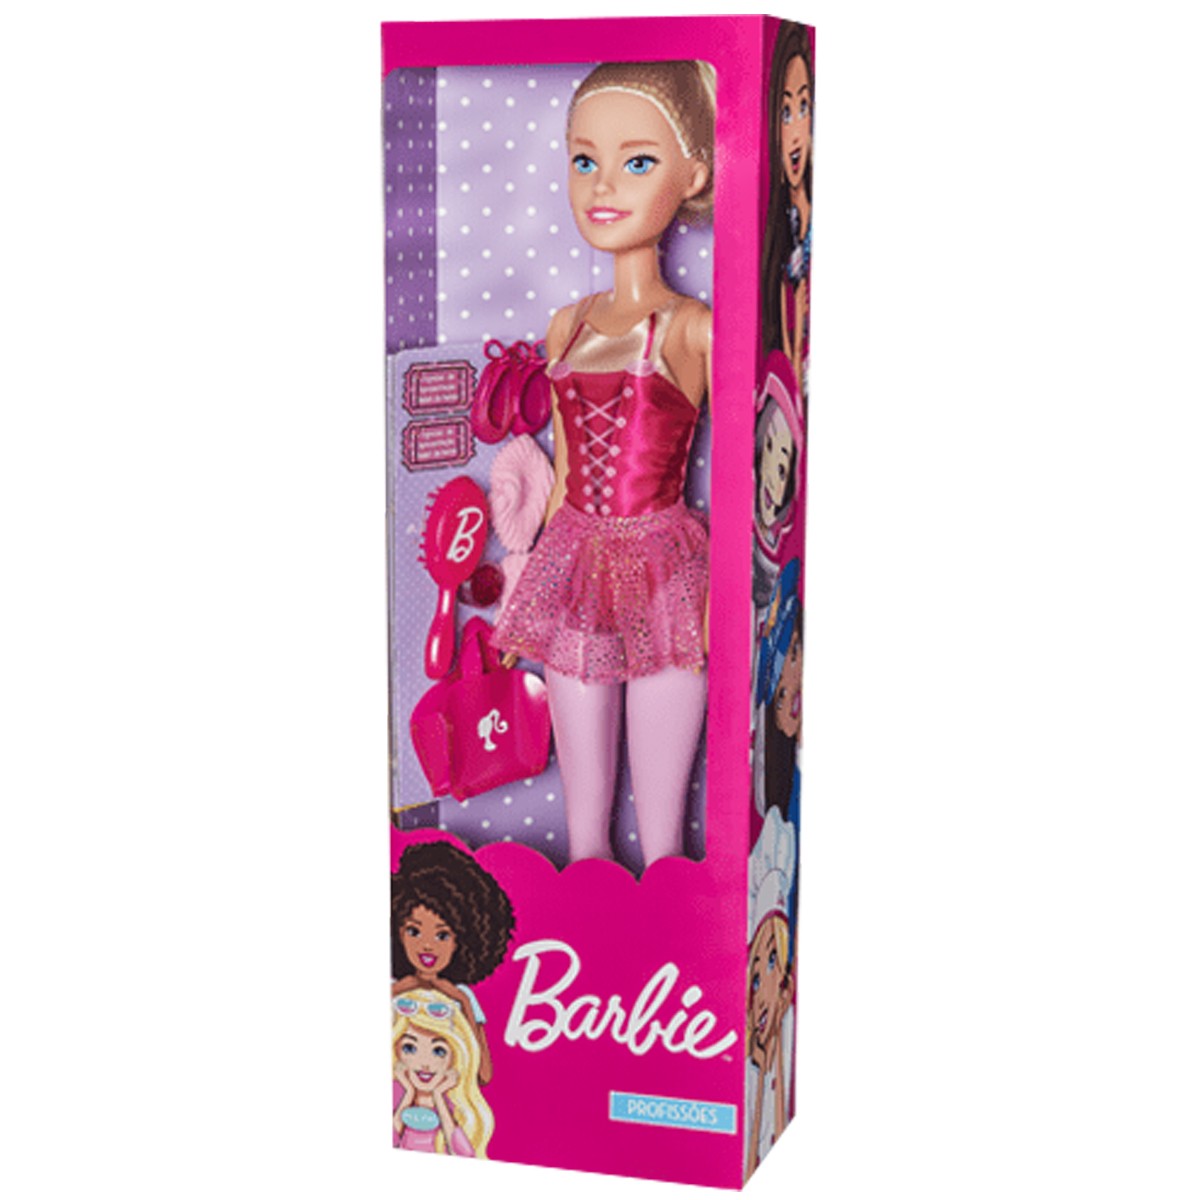 Boneca Barbie Bailarina 70 Centimetros Grande +3 Anos Com Acessorios Brinquedo Large Doll Matell Pupee